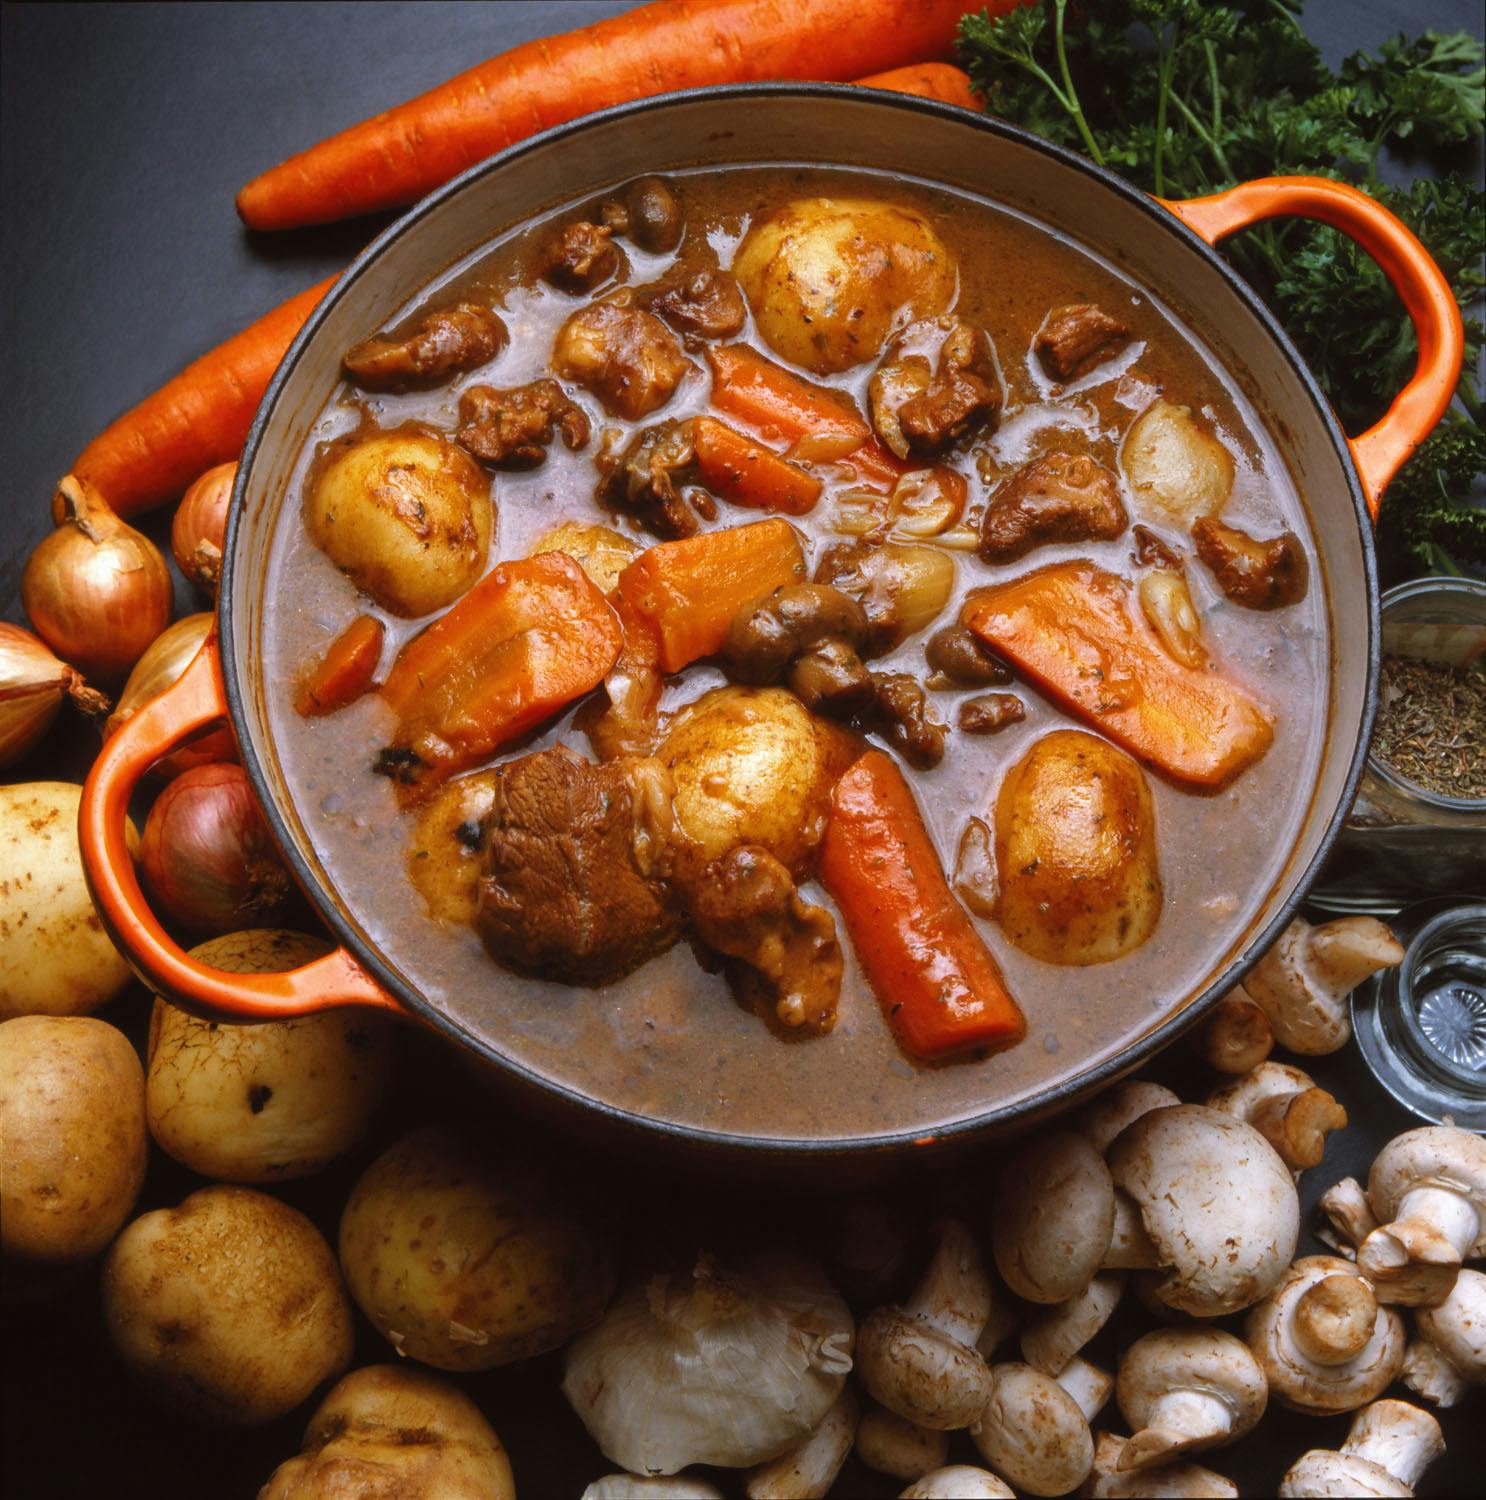 irish stew - irelands national dish